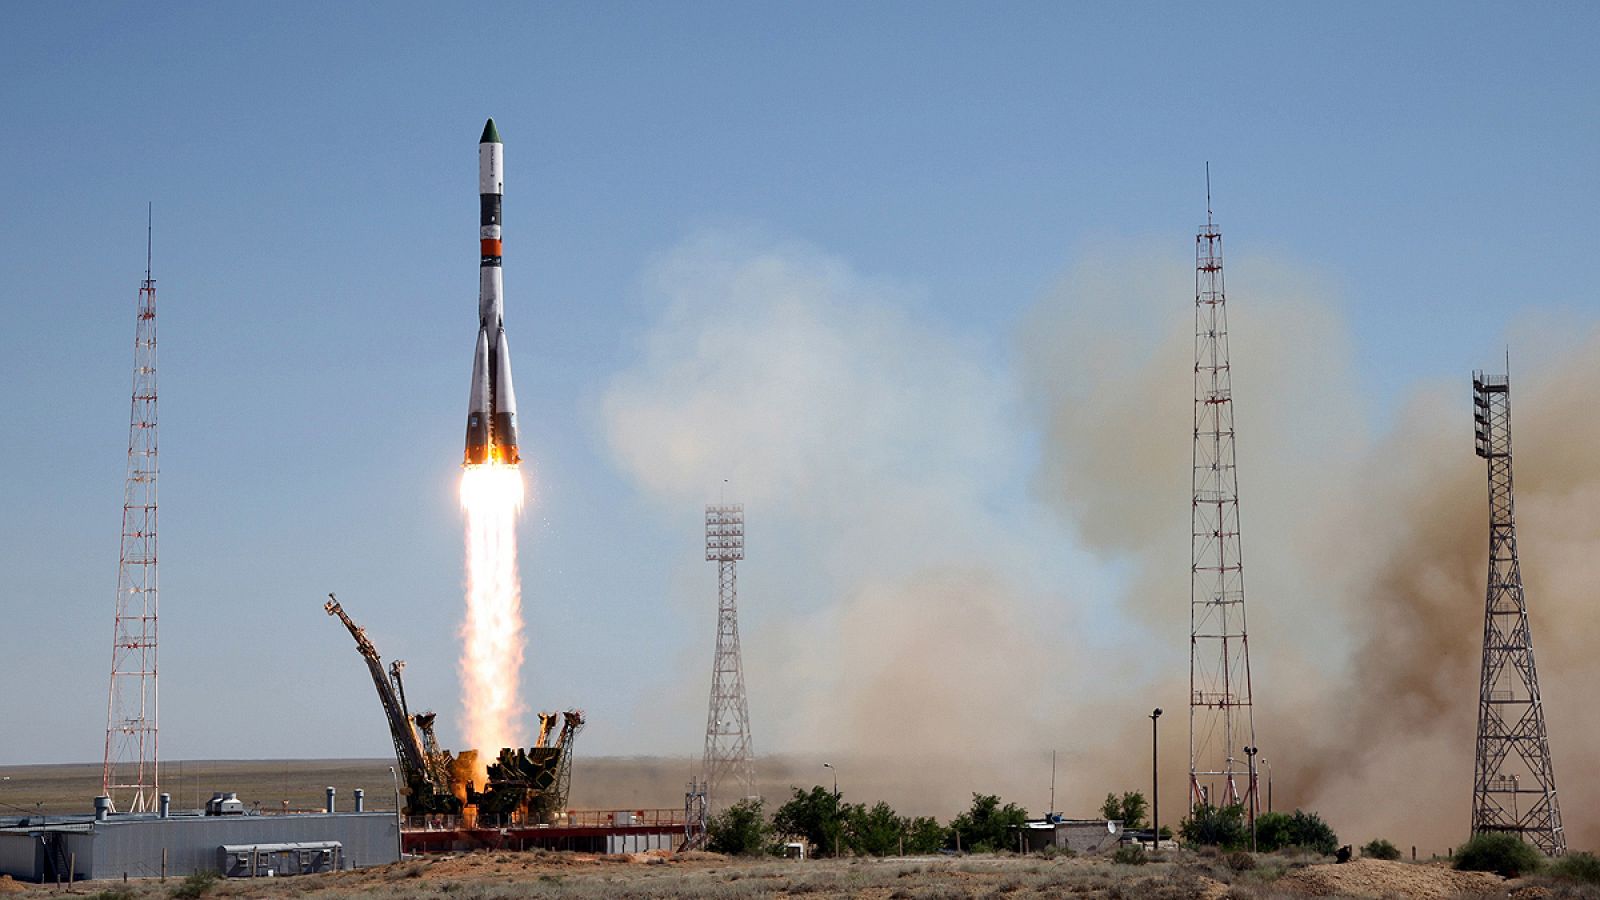 El carguero espacial Progress M-28M, en el momento de su lanzamiento desde el cosmódromo de Baikonur (Kazajistán).